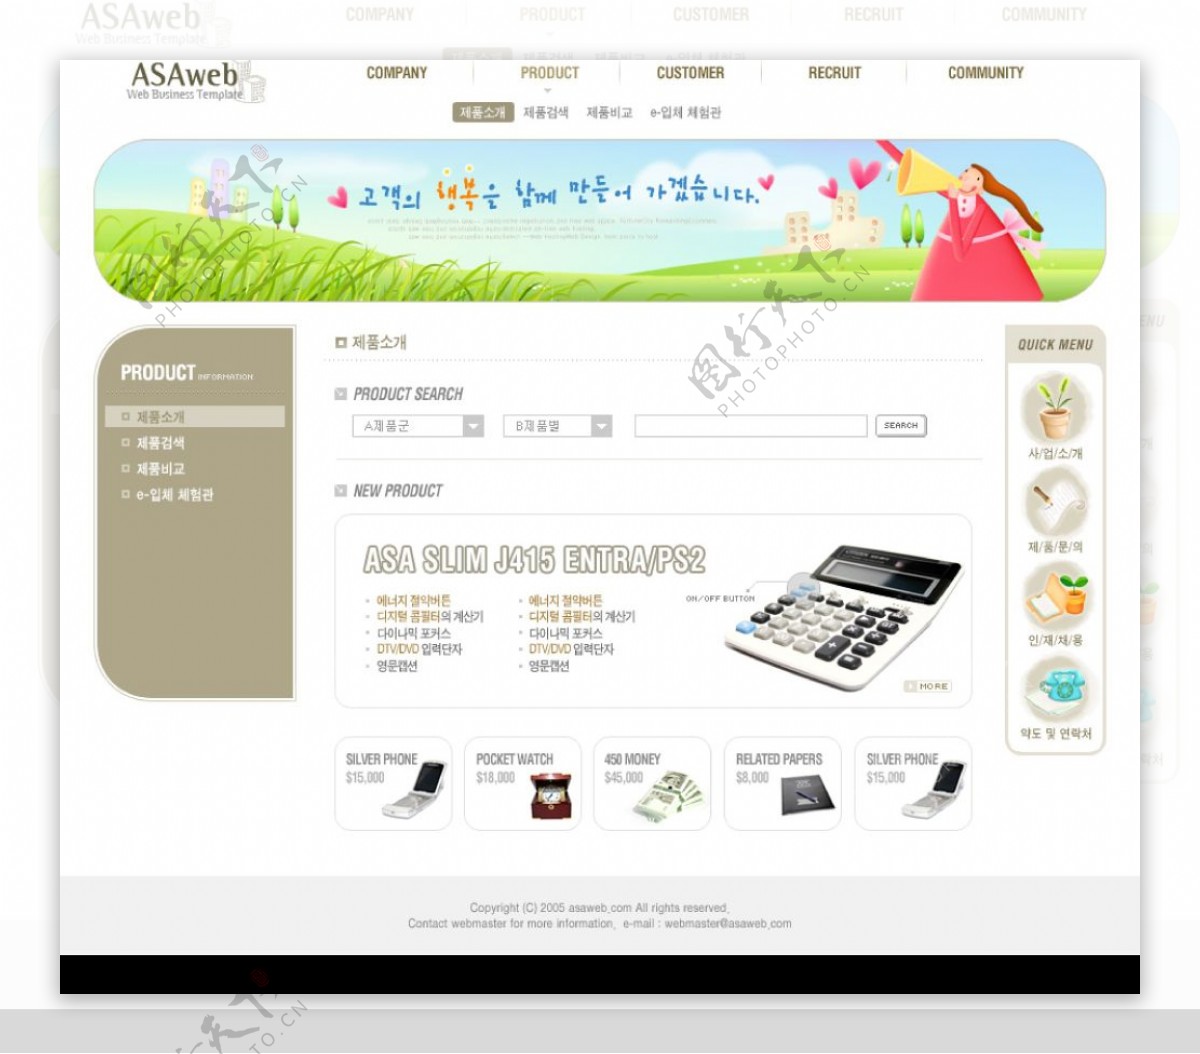 电子产品类网页模板图片